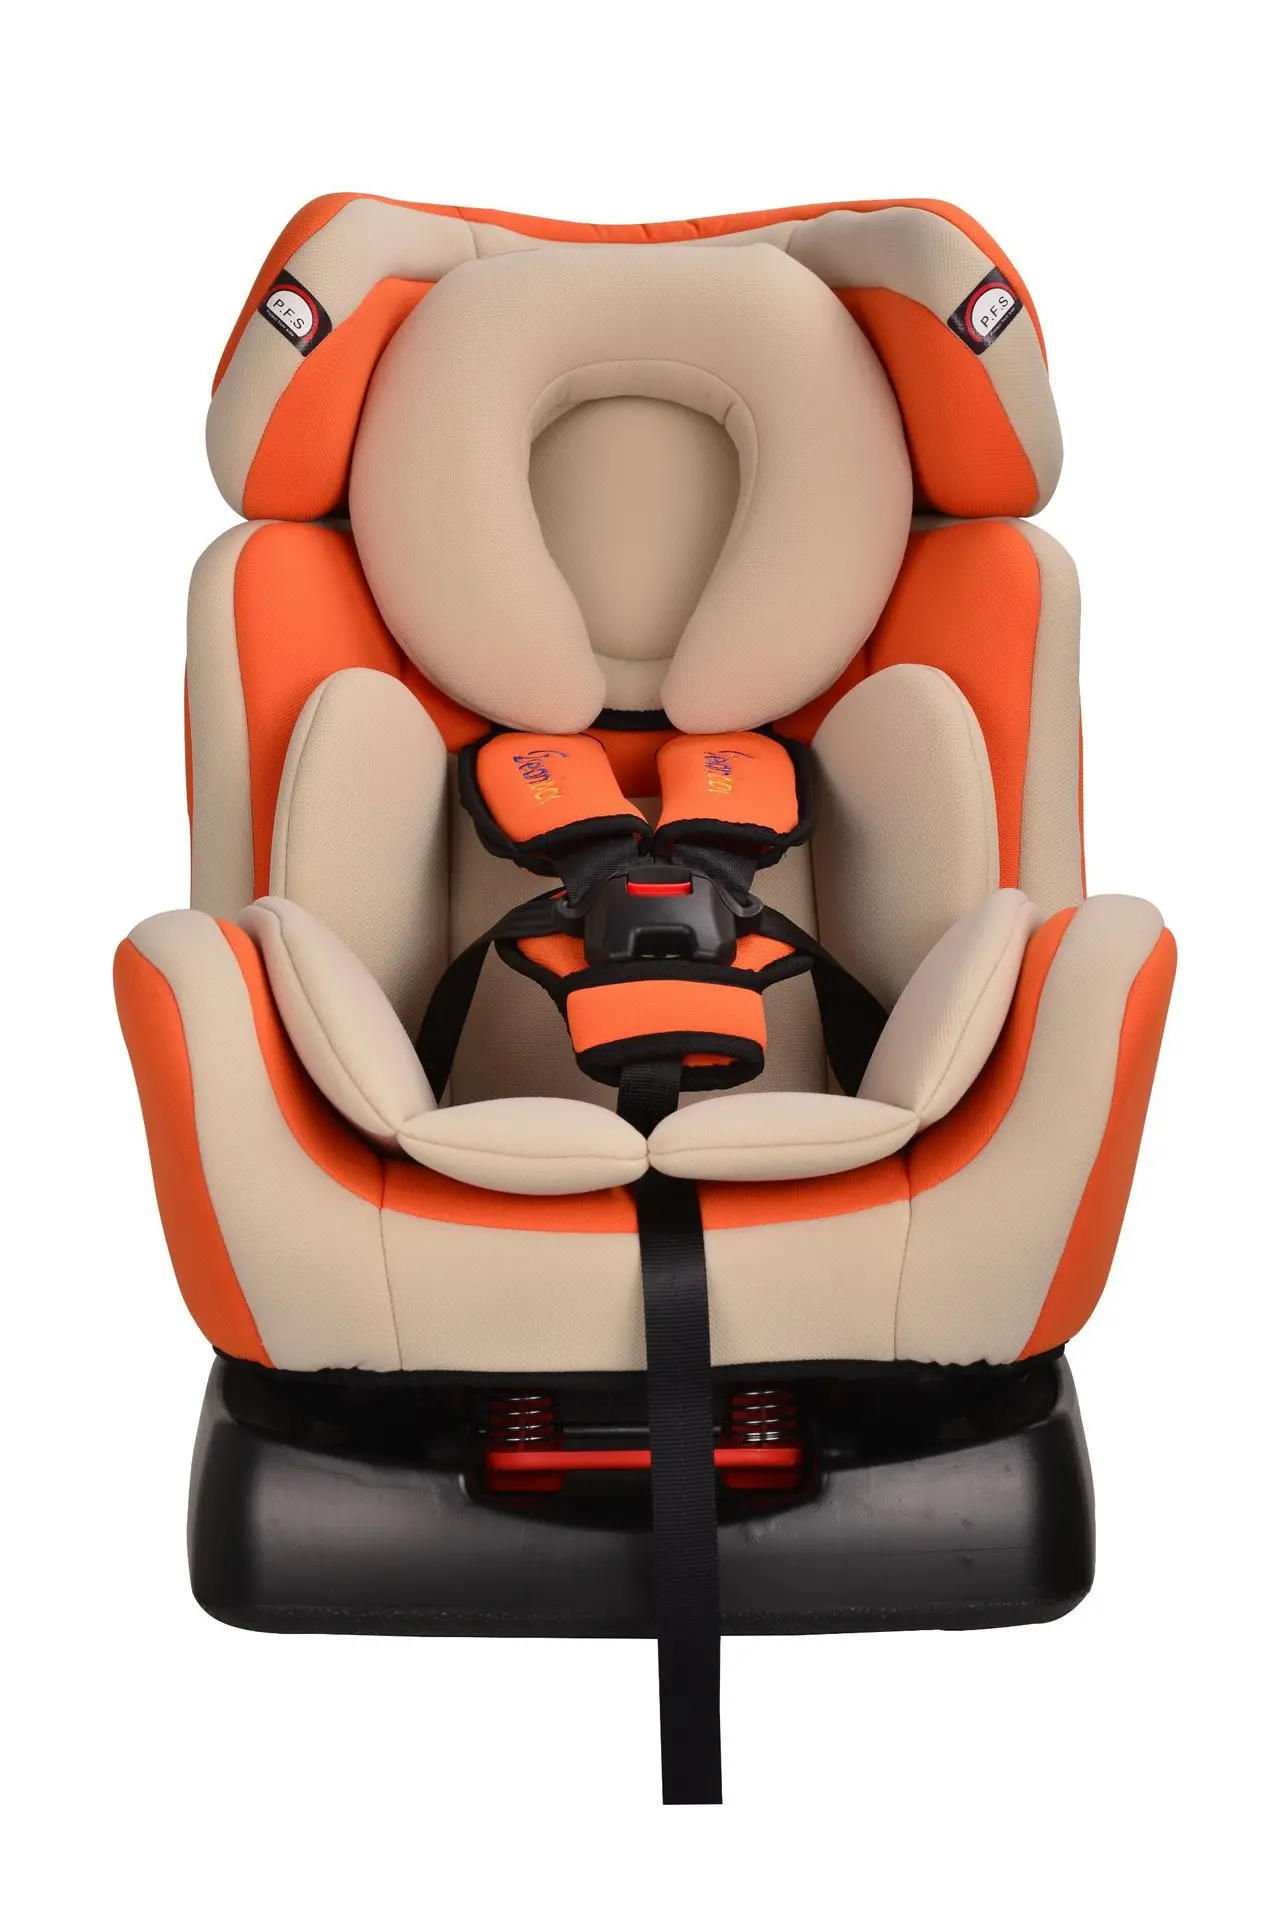 Детское автомобильное кресло-бустер для младенцев детское автомобильное сиденье пятиточечный ремень безопасности детское автомобильное сиденье 0-6 лет - Цвет: Оранжевый